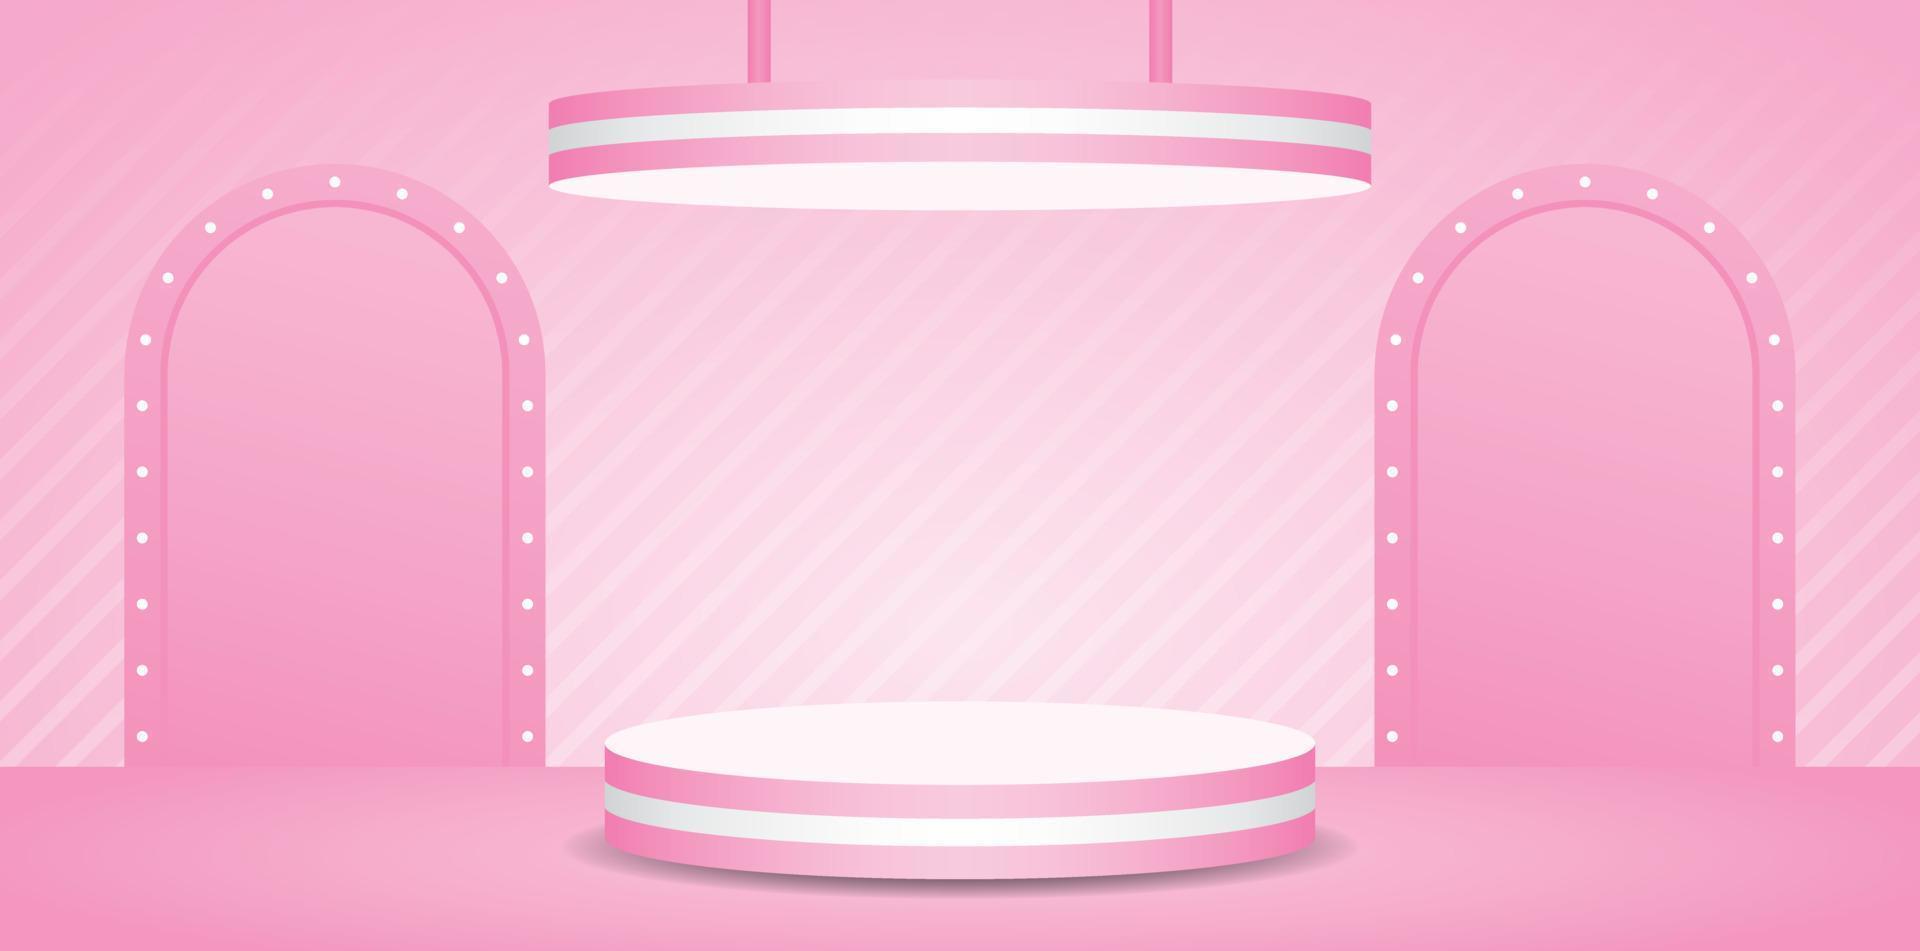 palco de exibição de pódio listrado rosa com teto suspenso e cenário de arco de lâmpada no piso rosa pastel doce e vetor de ilustração 3d de parede para colocar produtos de beleza e cosméticos